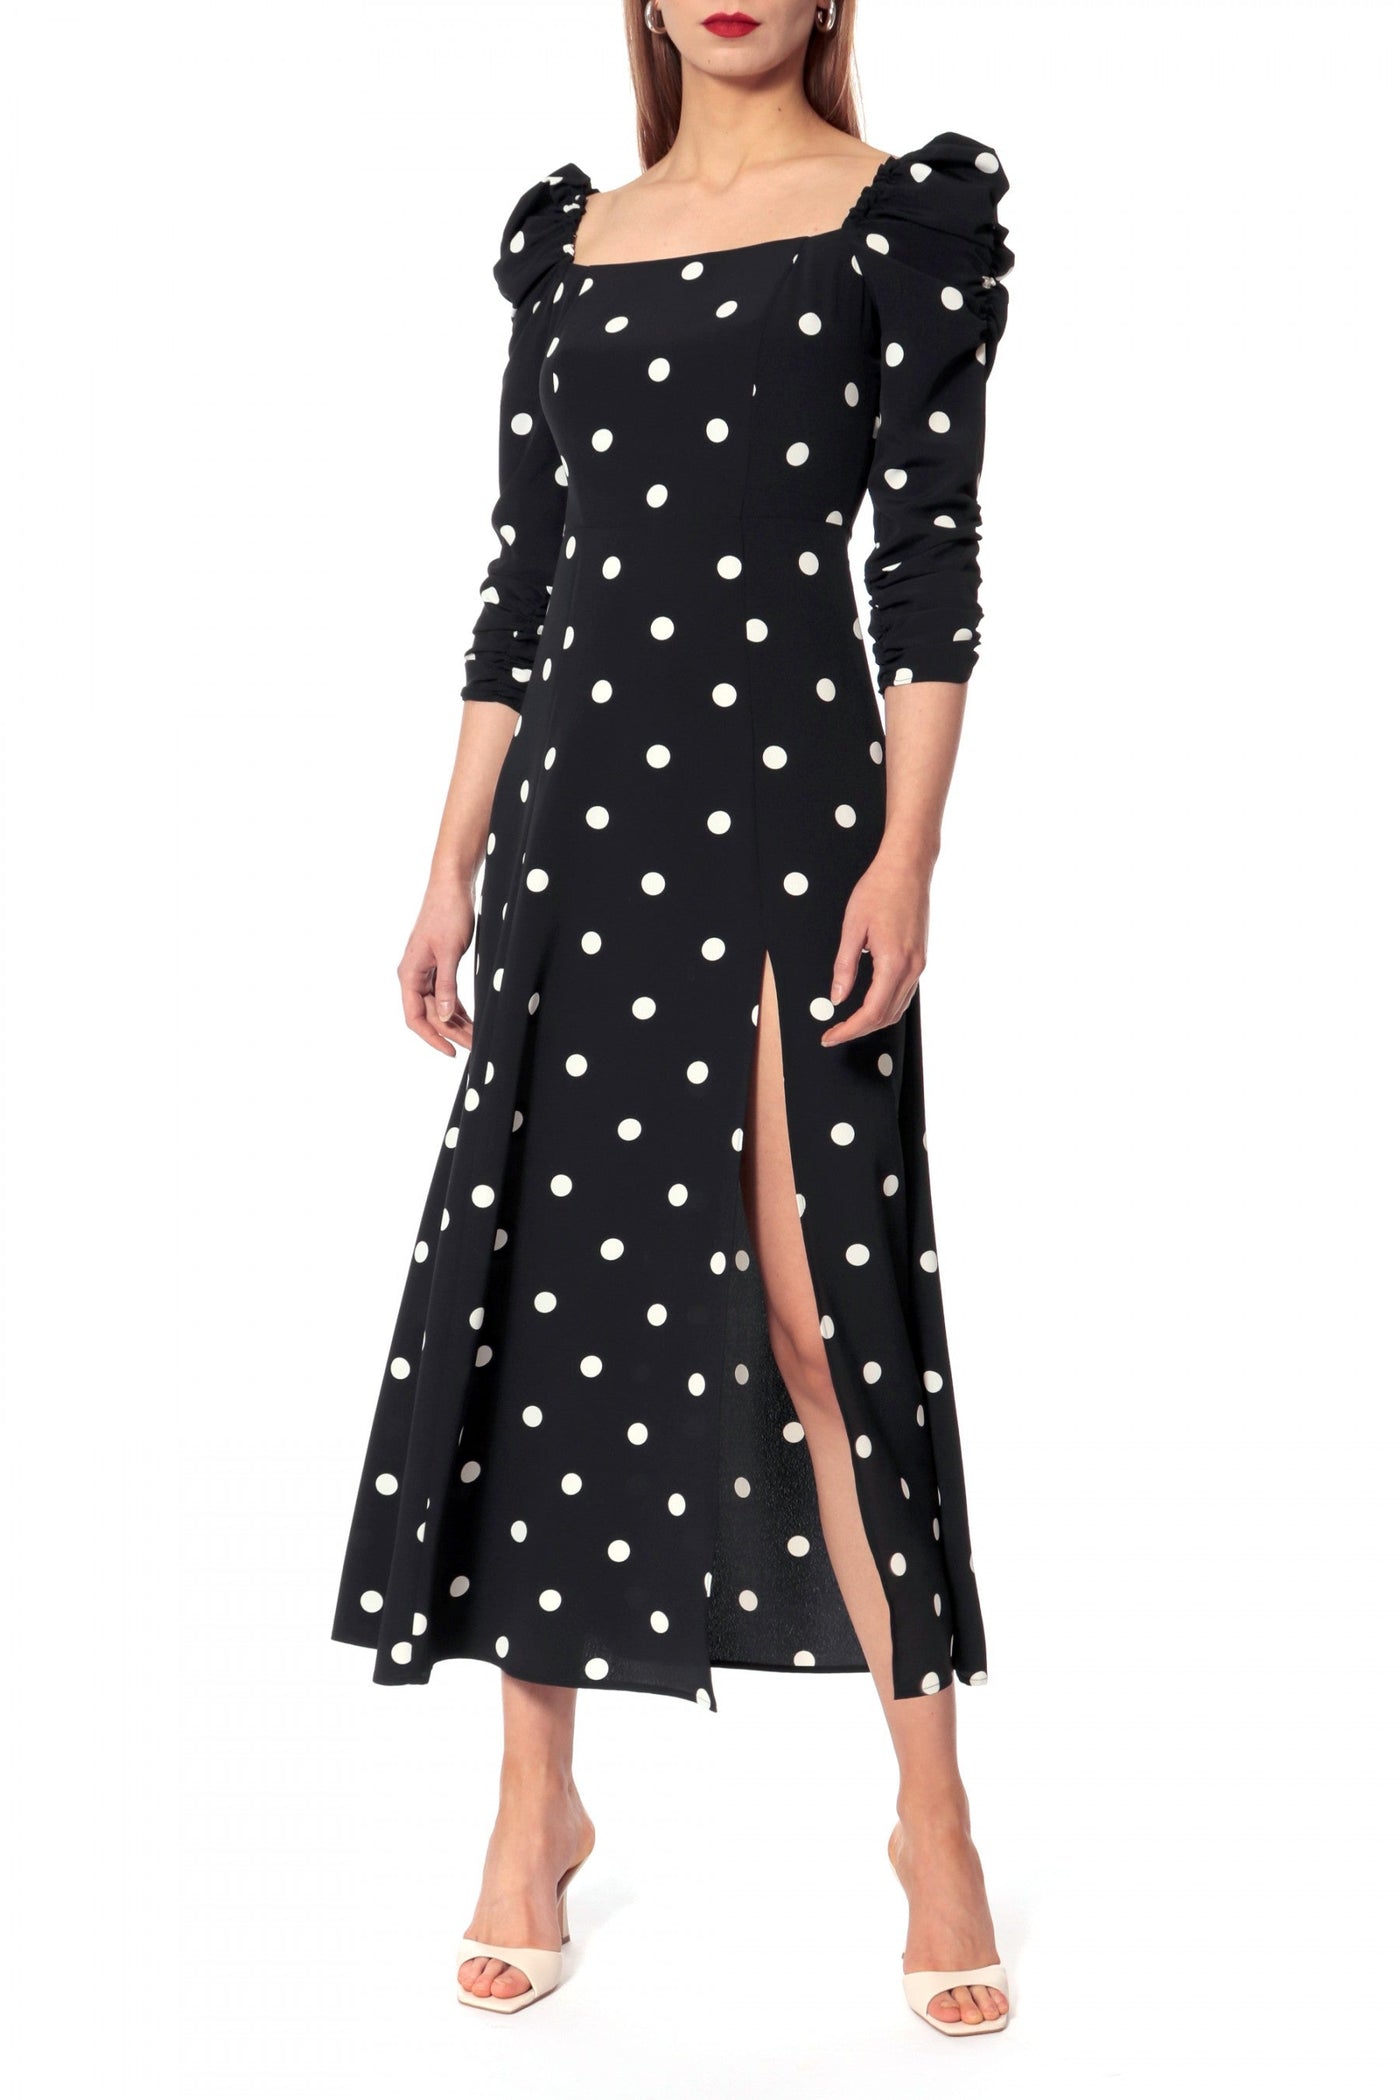 Amelie Walking Dots Dress